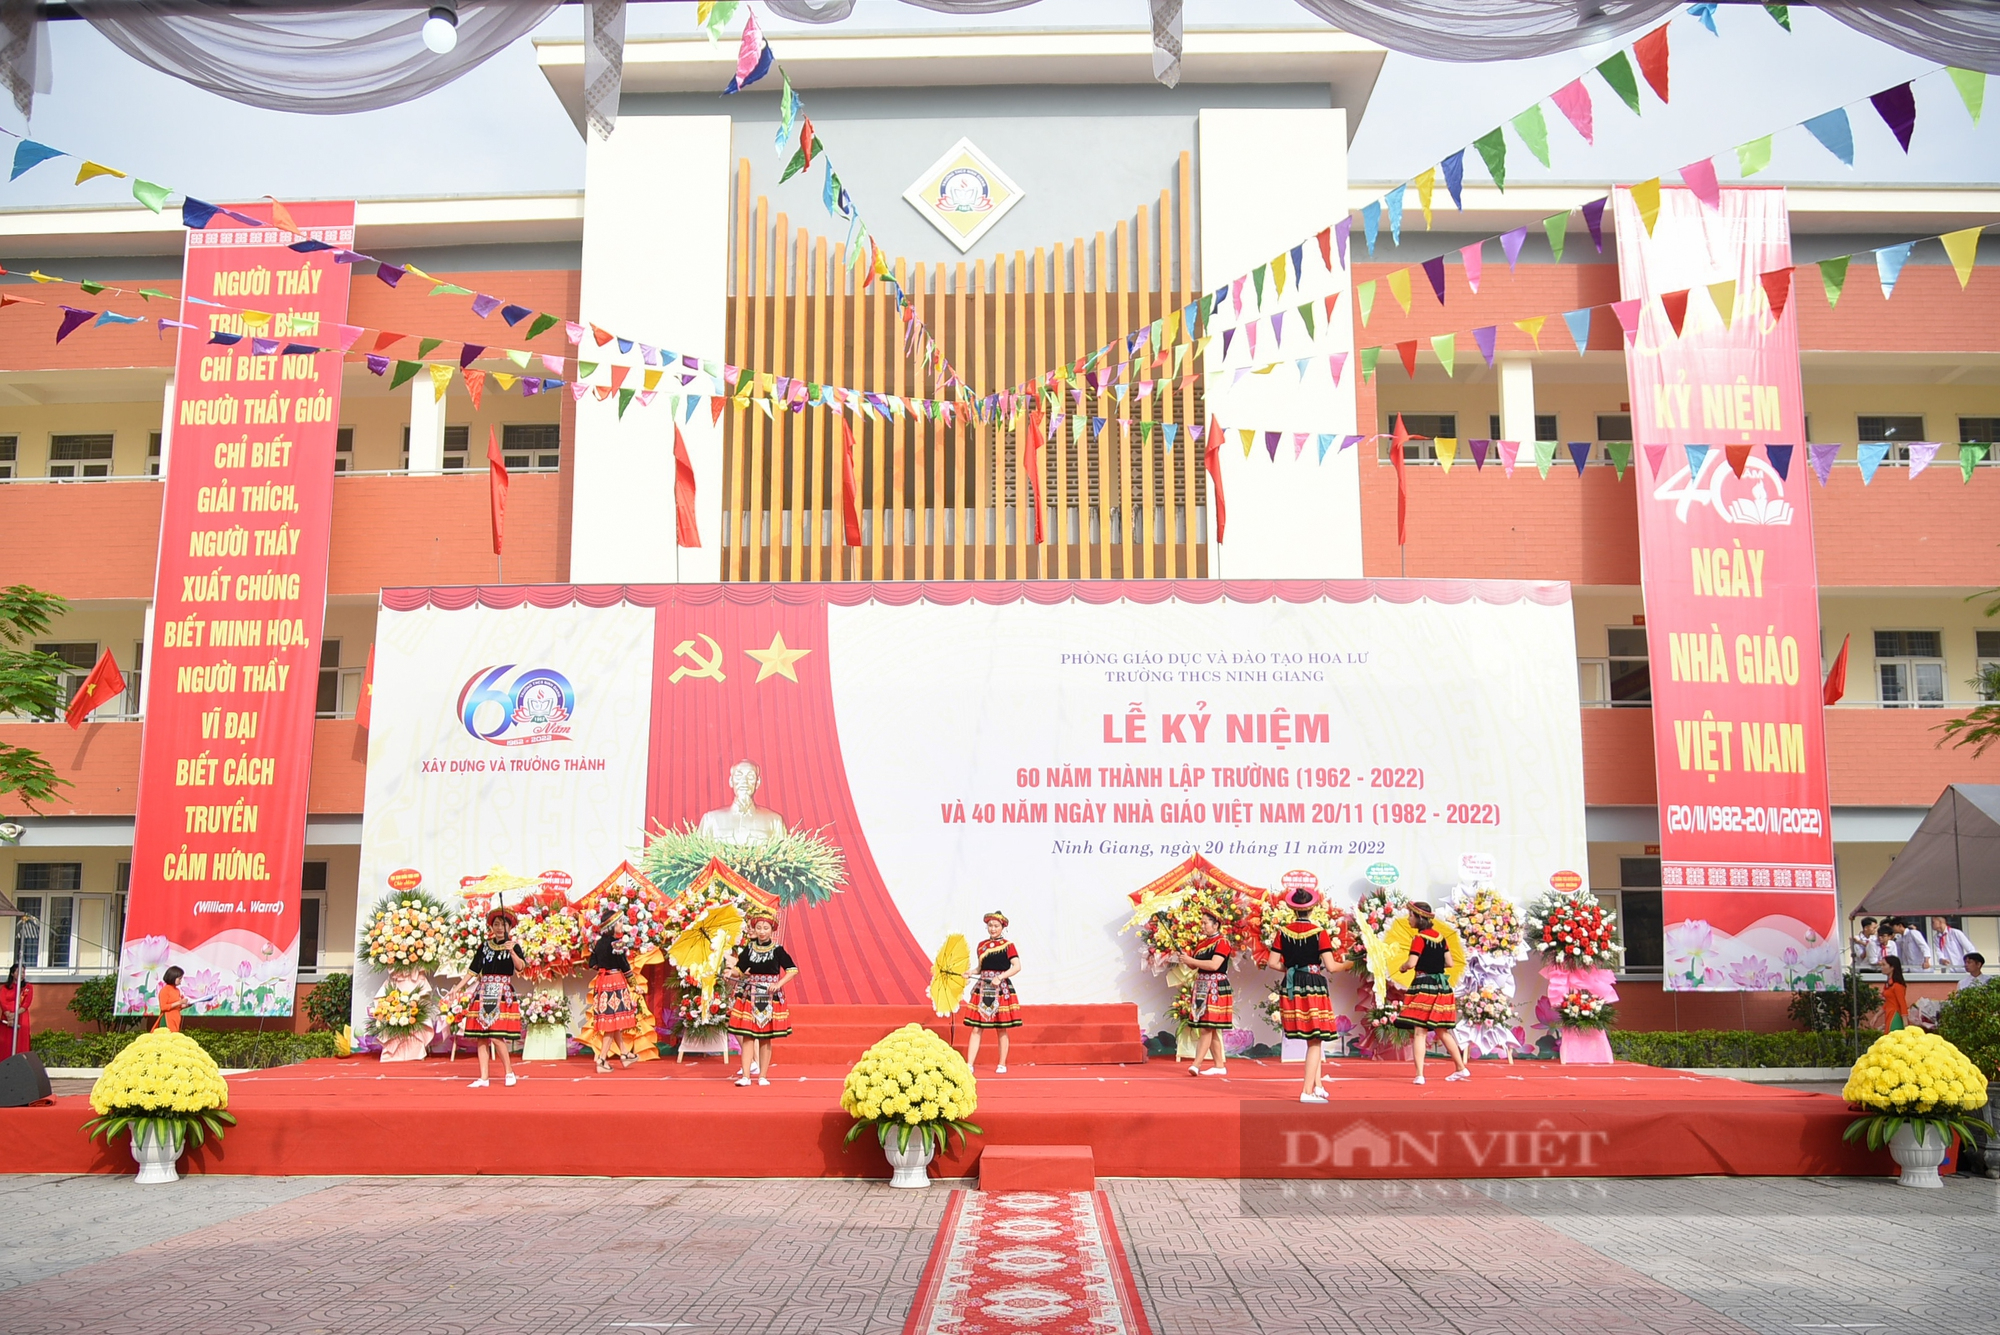 Báo NTNN/Điện tử Dân Việt tặng 10 suất học bổng và 10 tủ sách thư viện cho trường THCS Ninh Giang - Ảnh 5.